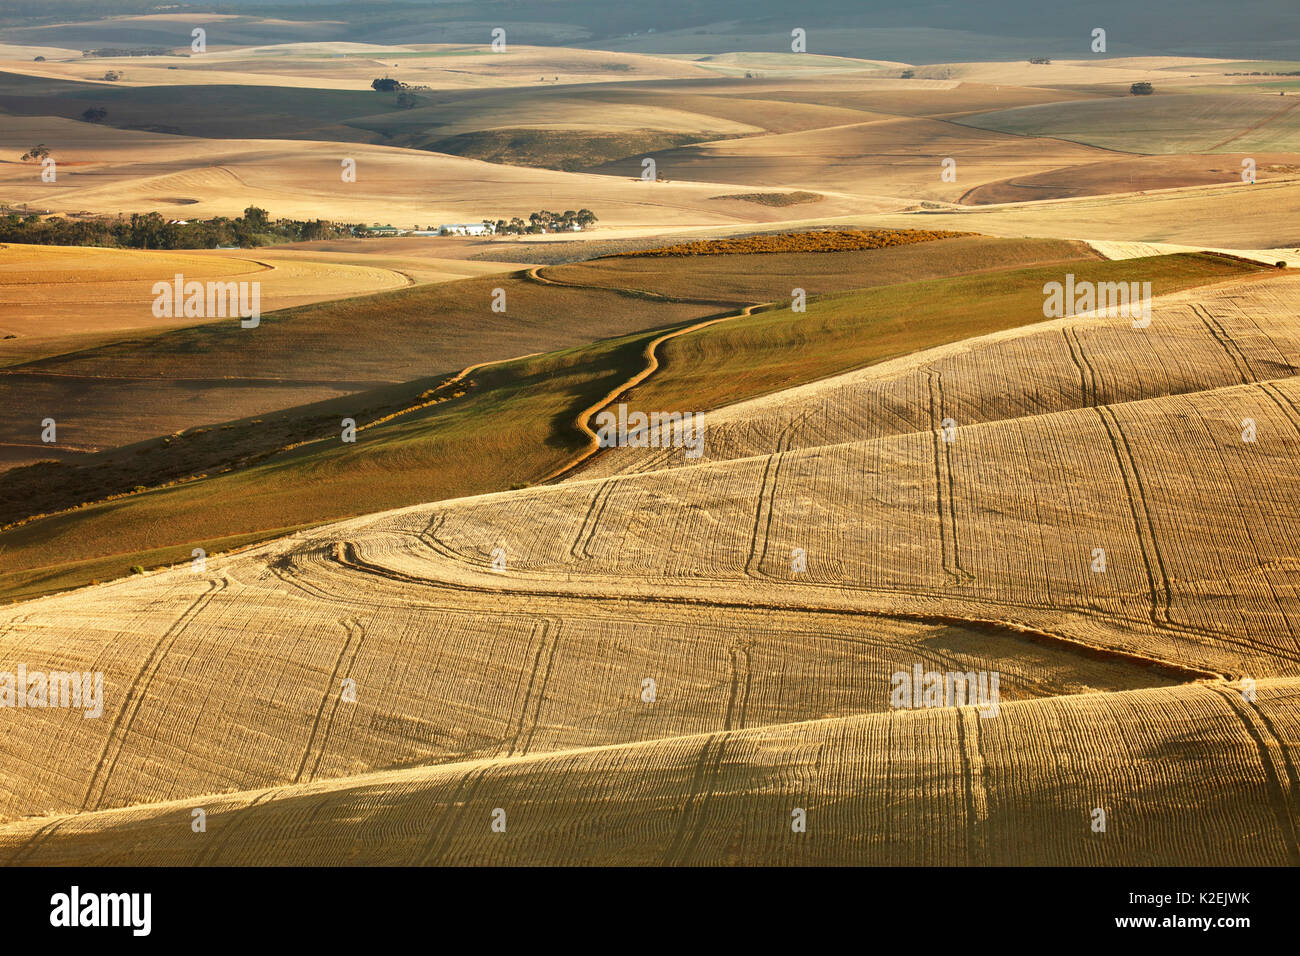 Rolling Ackerland in der Overberg Region in der Nähe von Villiersdorp, Western Cape, Südafrika. Dezember 2014. Stockfoto